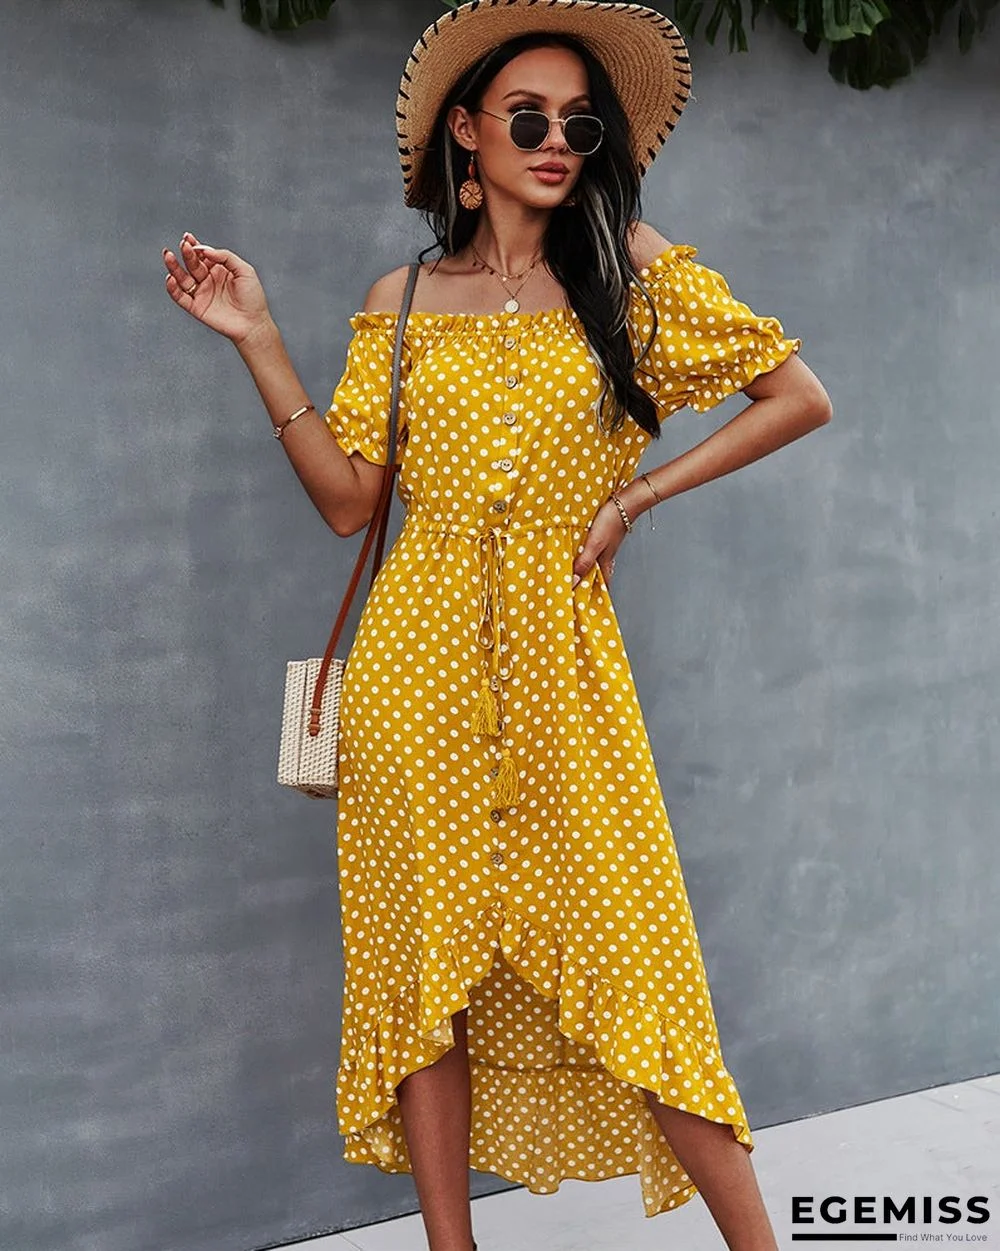 Self-designed Women's Dress with A Big Shoulder Dress and Polka-dot Skirt | EGEMISS